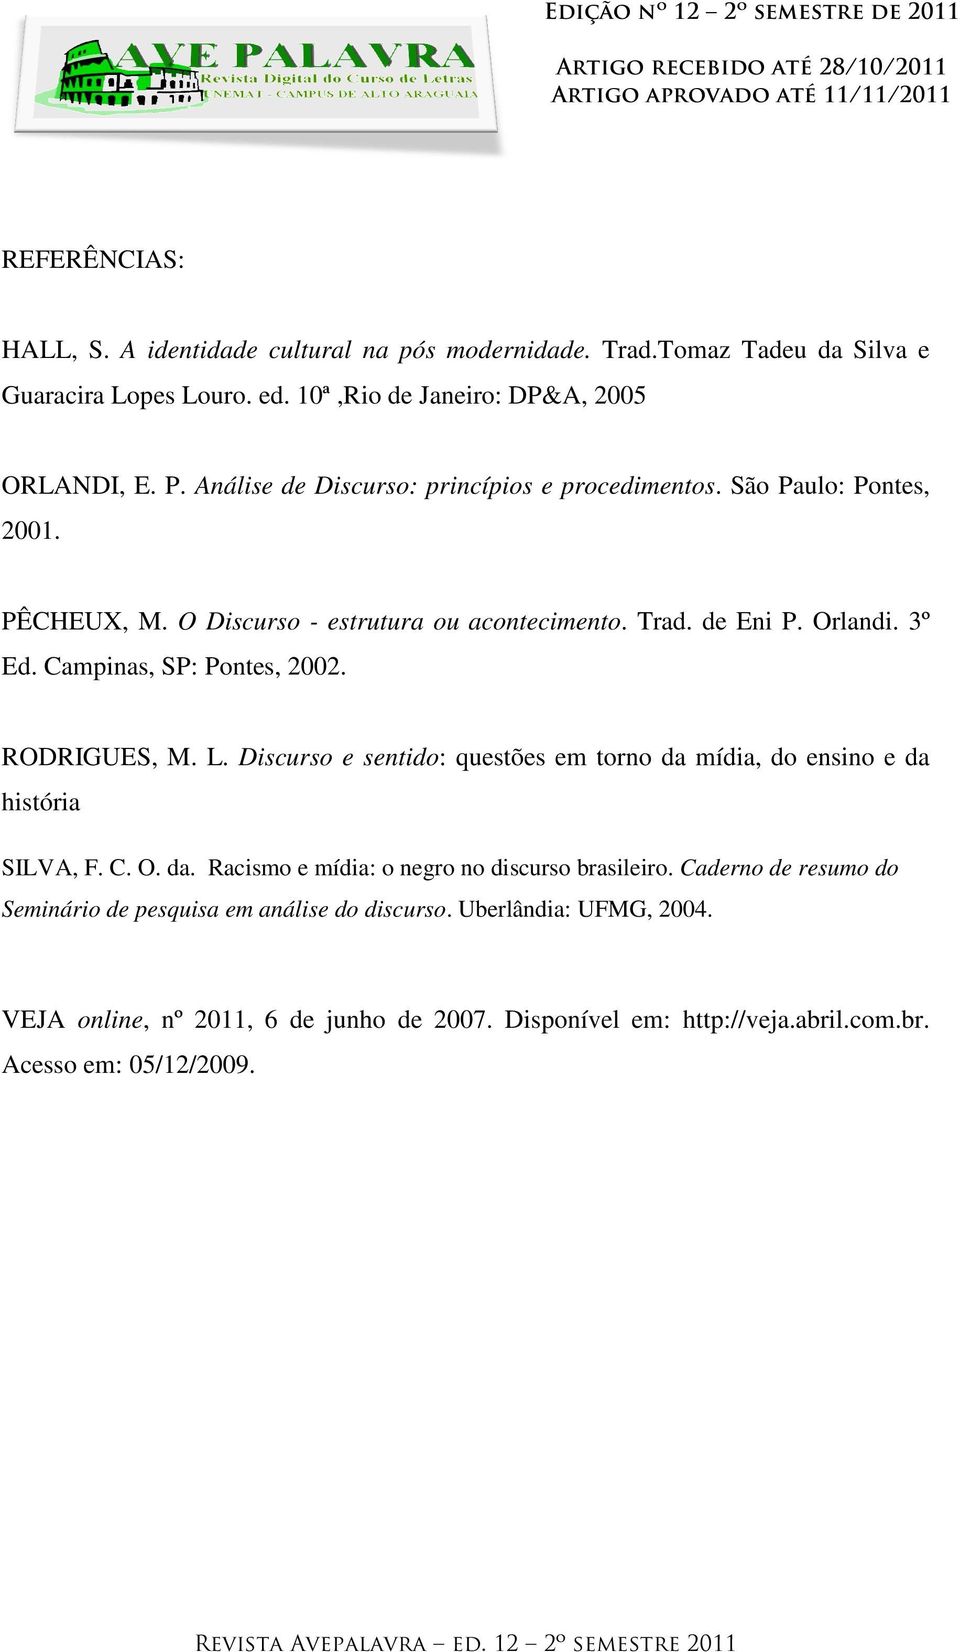 Campinas, SP: Pontes, 2002. RODRIGUES, M. L. Discurso e sentido: questões em torno da mídia, do ensino e da história SILVA, F. C. O. da. Racismo e mídia: o negro no discurso brasileiro.